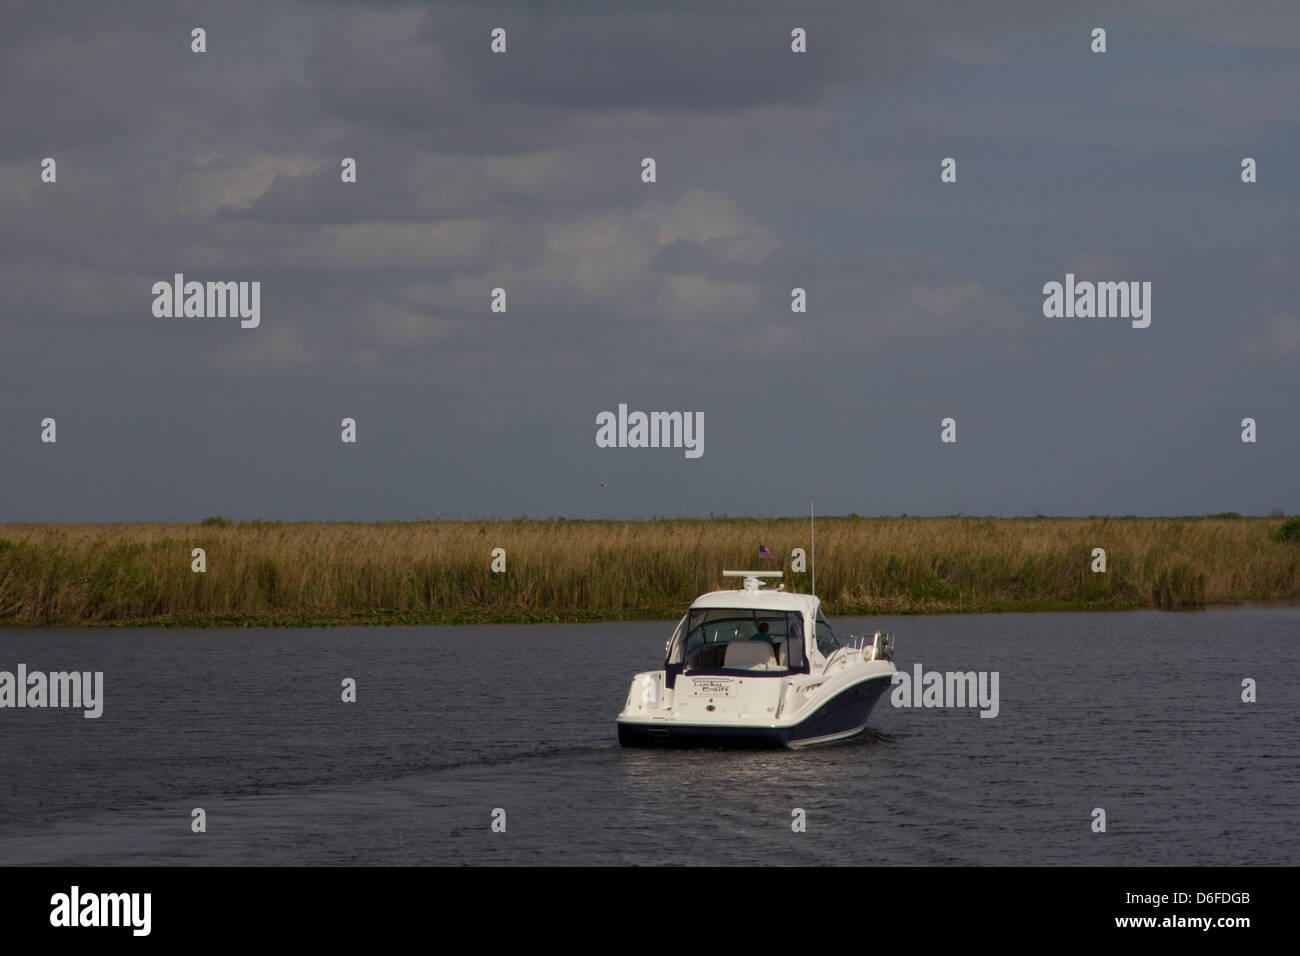 Voile sur canal qui relie le lac Okeechobee à Clewiston Marina, Clewiston, FL Banque D'Images